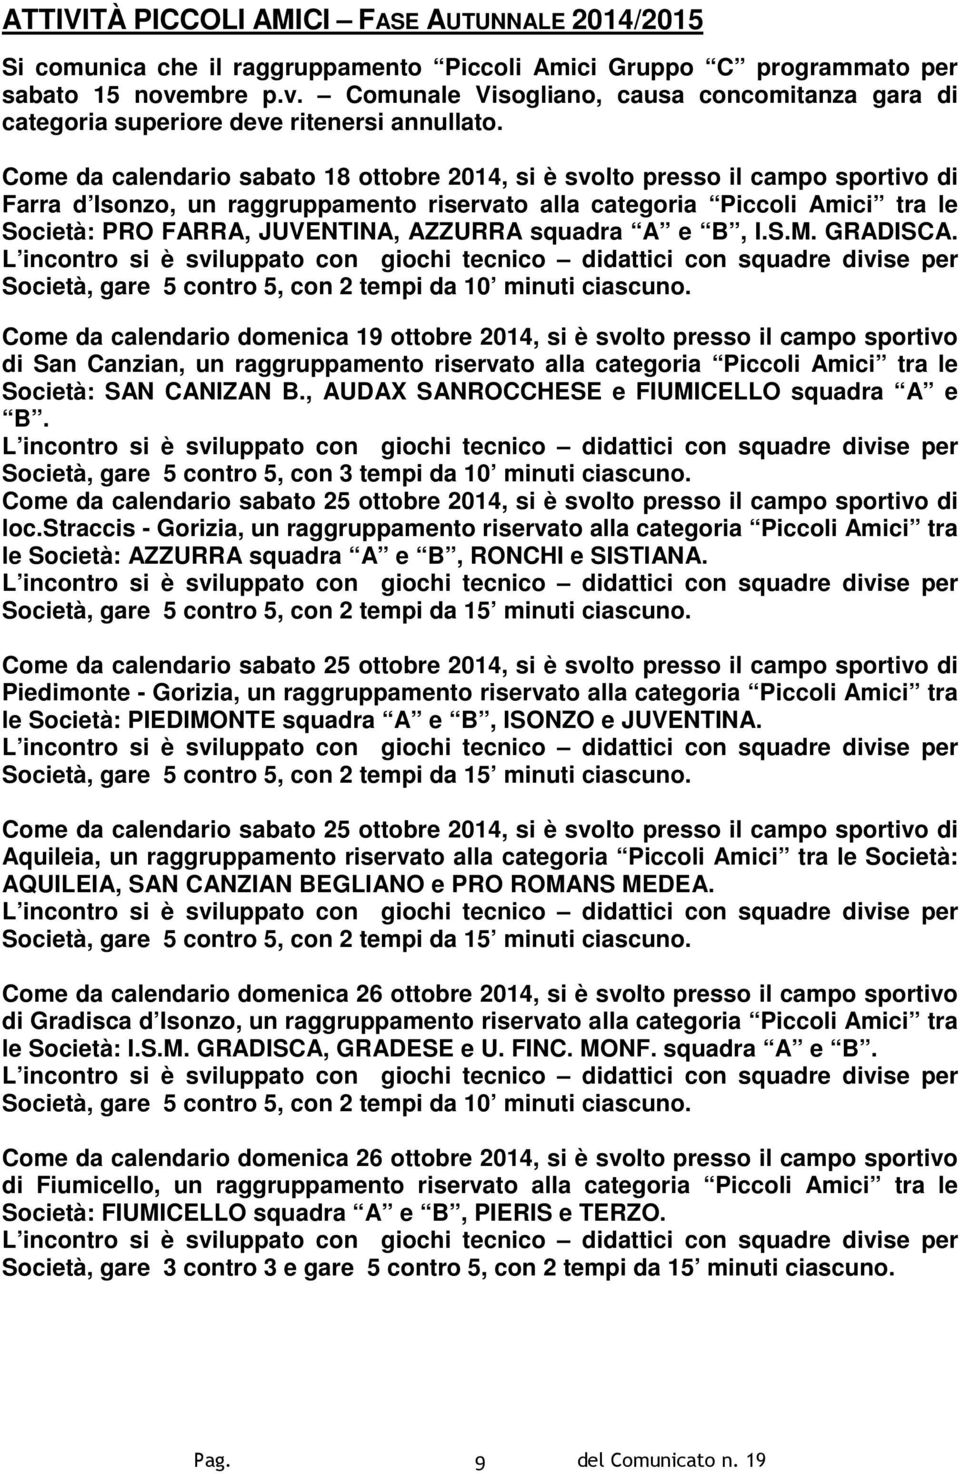 Come da calendario sabato 18 ottobre 2014, si è svolto presso il campo sportivo di Farra d Isonzo, un raggruppamento riservato alla categoria Piccoli Amici tra le Società: PRO FARRA, JUVENTINA,